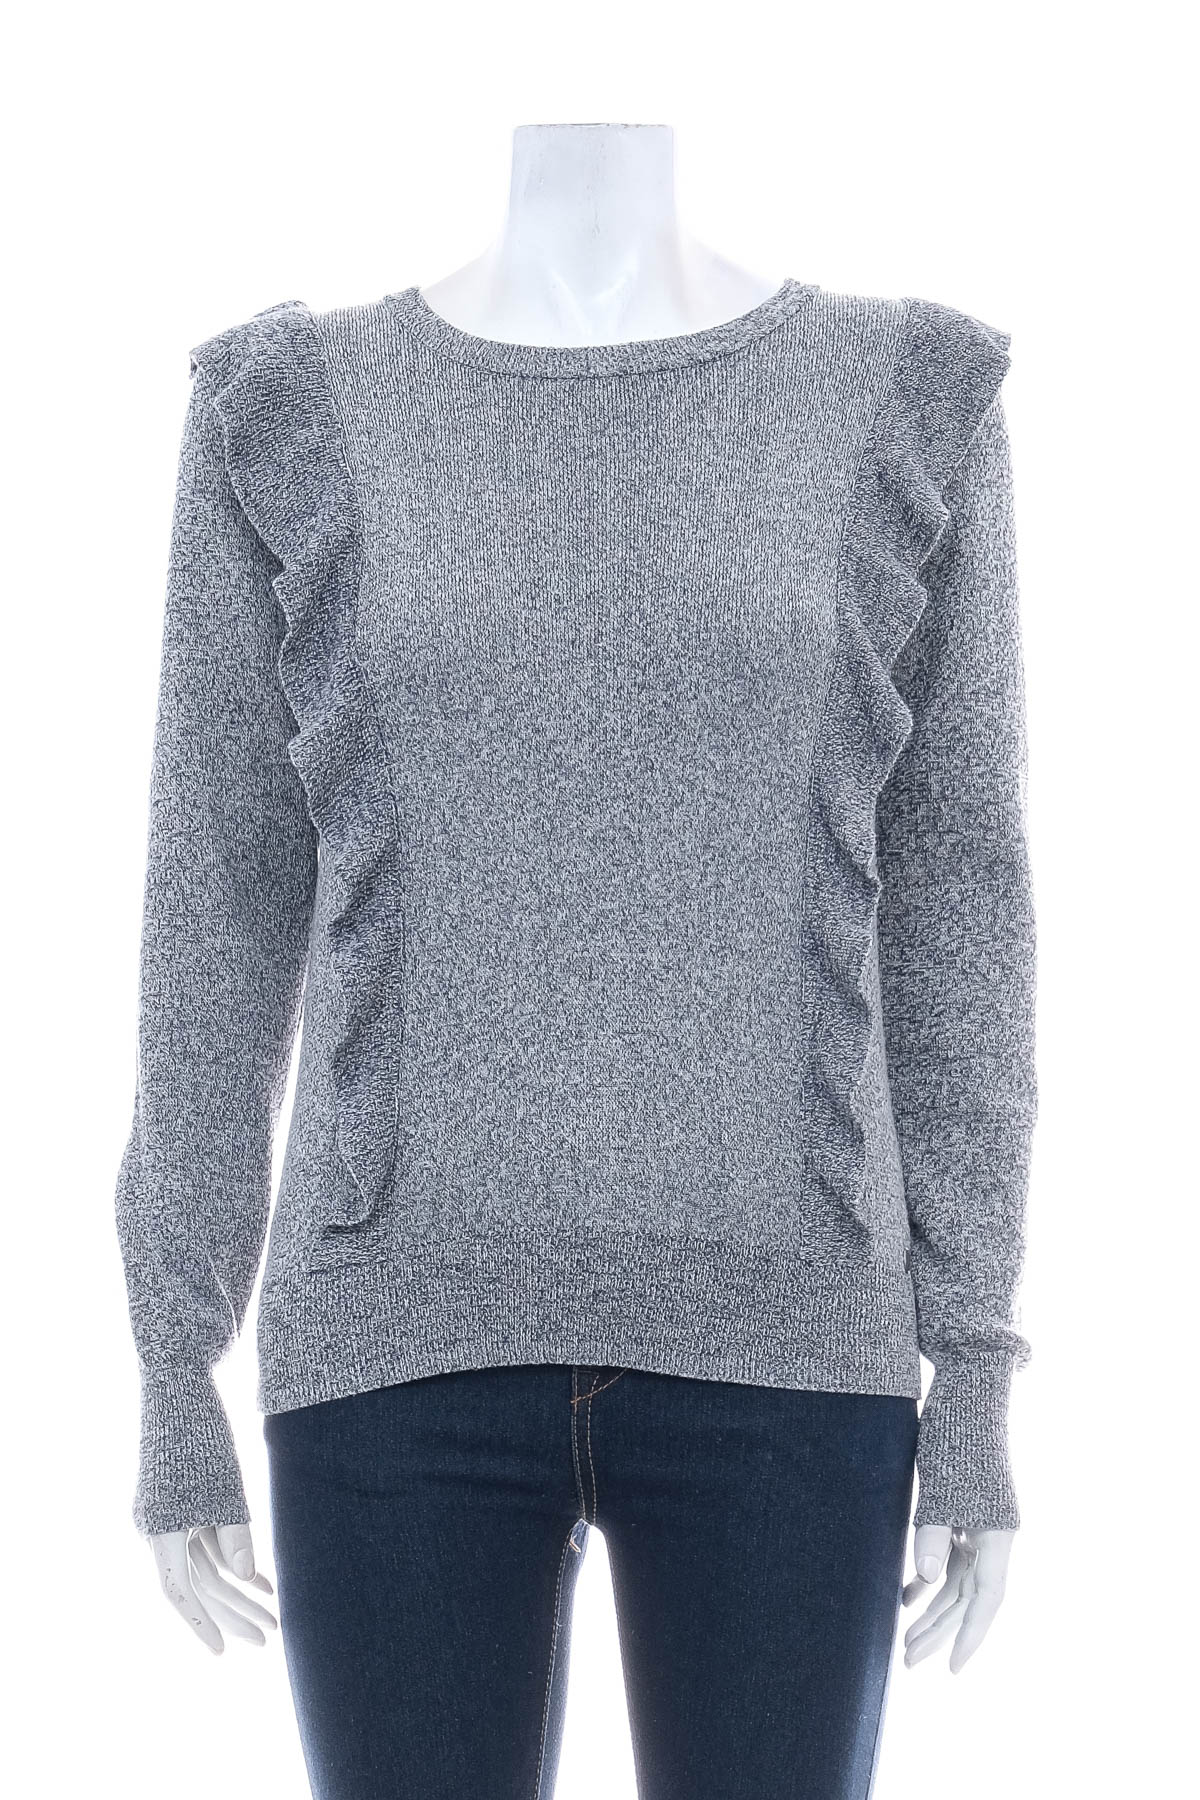 Women's sweater - Garcia Jeans - 0